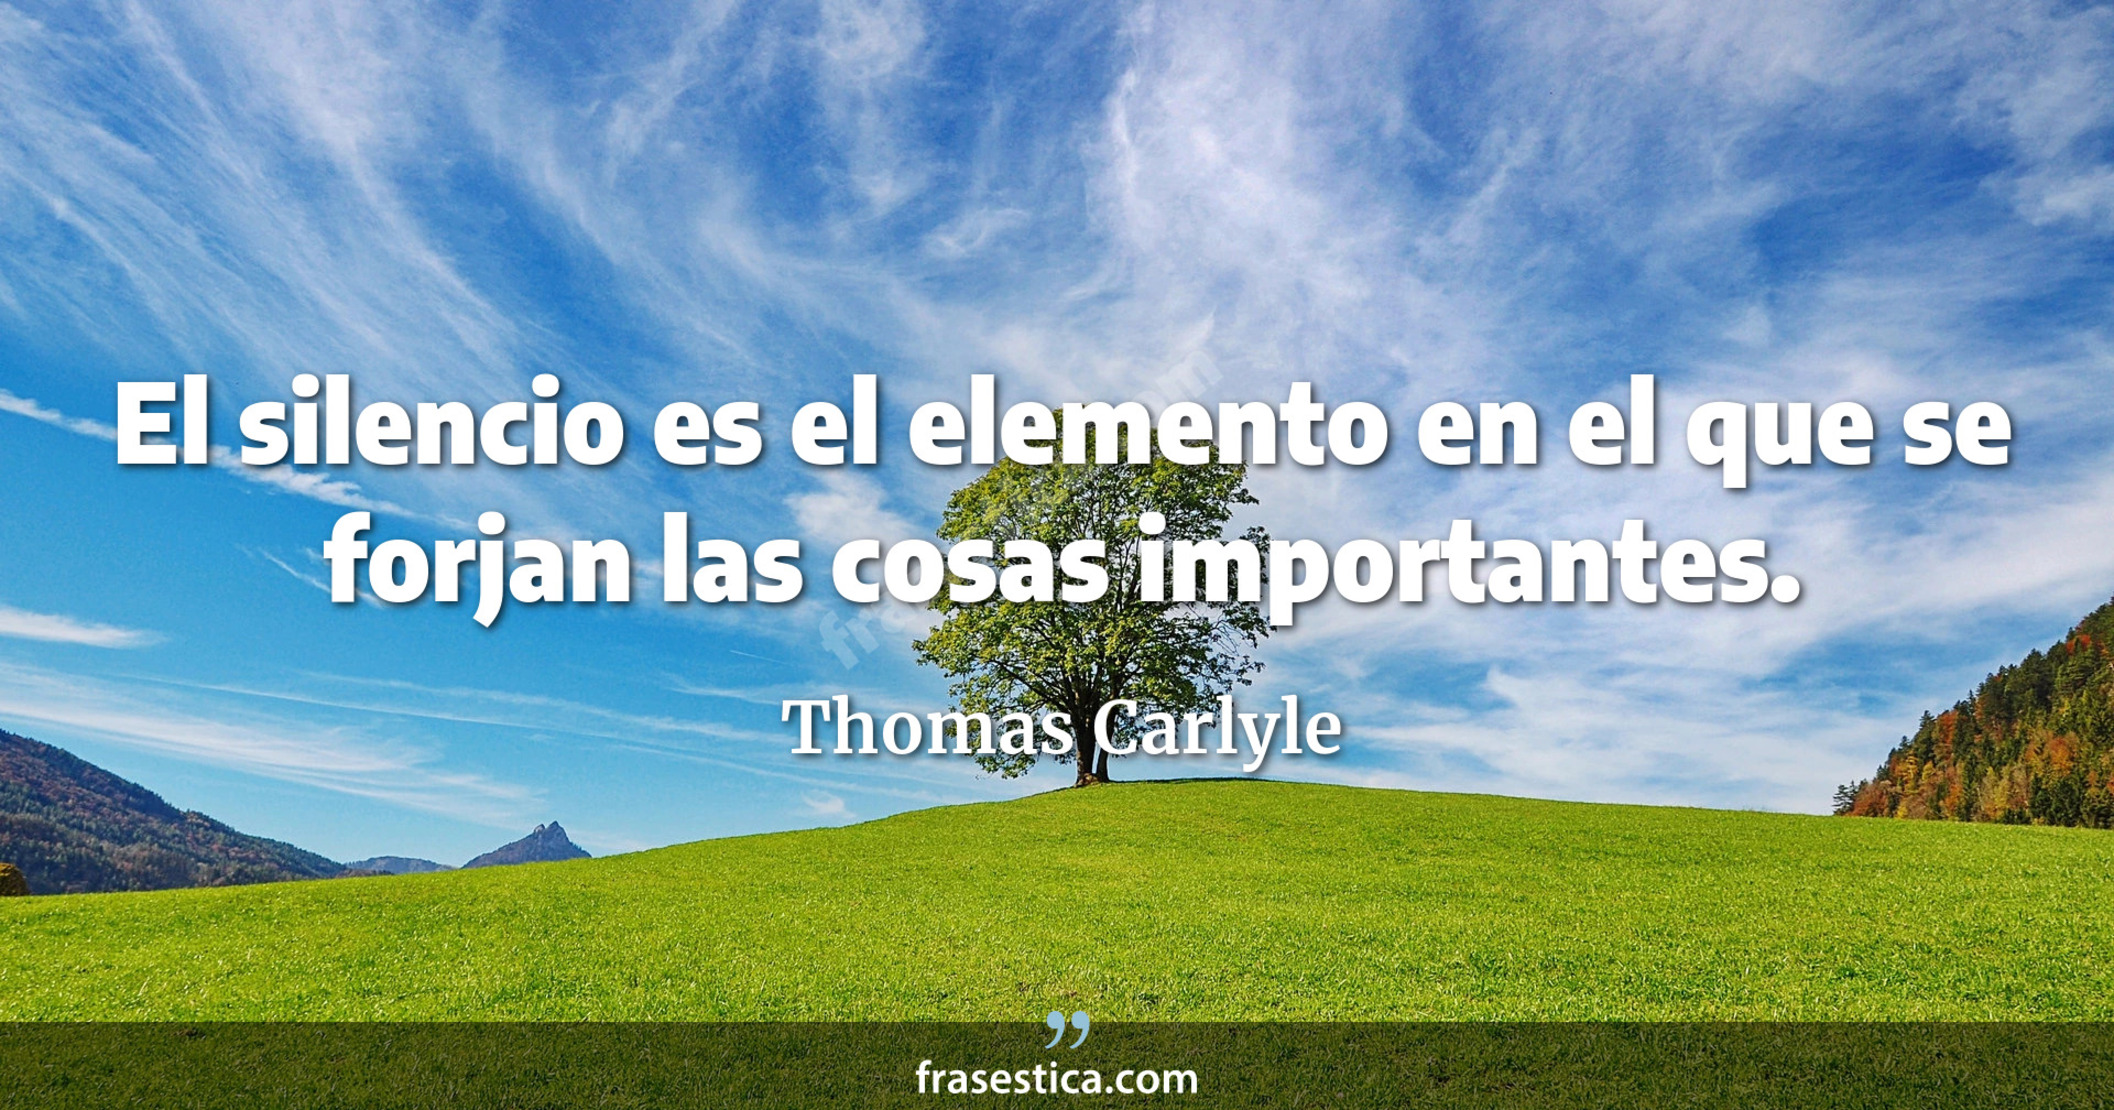 El silencio es el elemento en el que se forjan las cosas importantes. - Thomas Carlyle